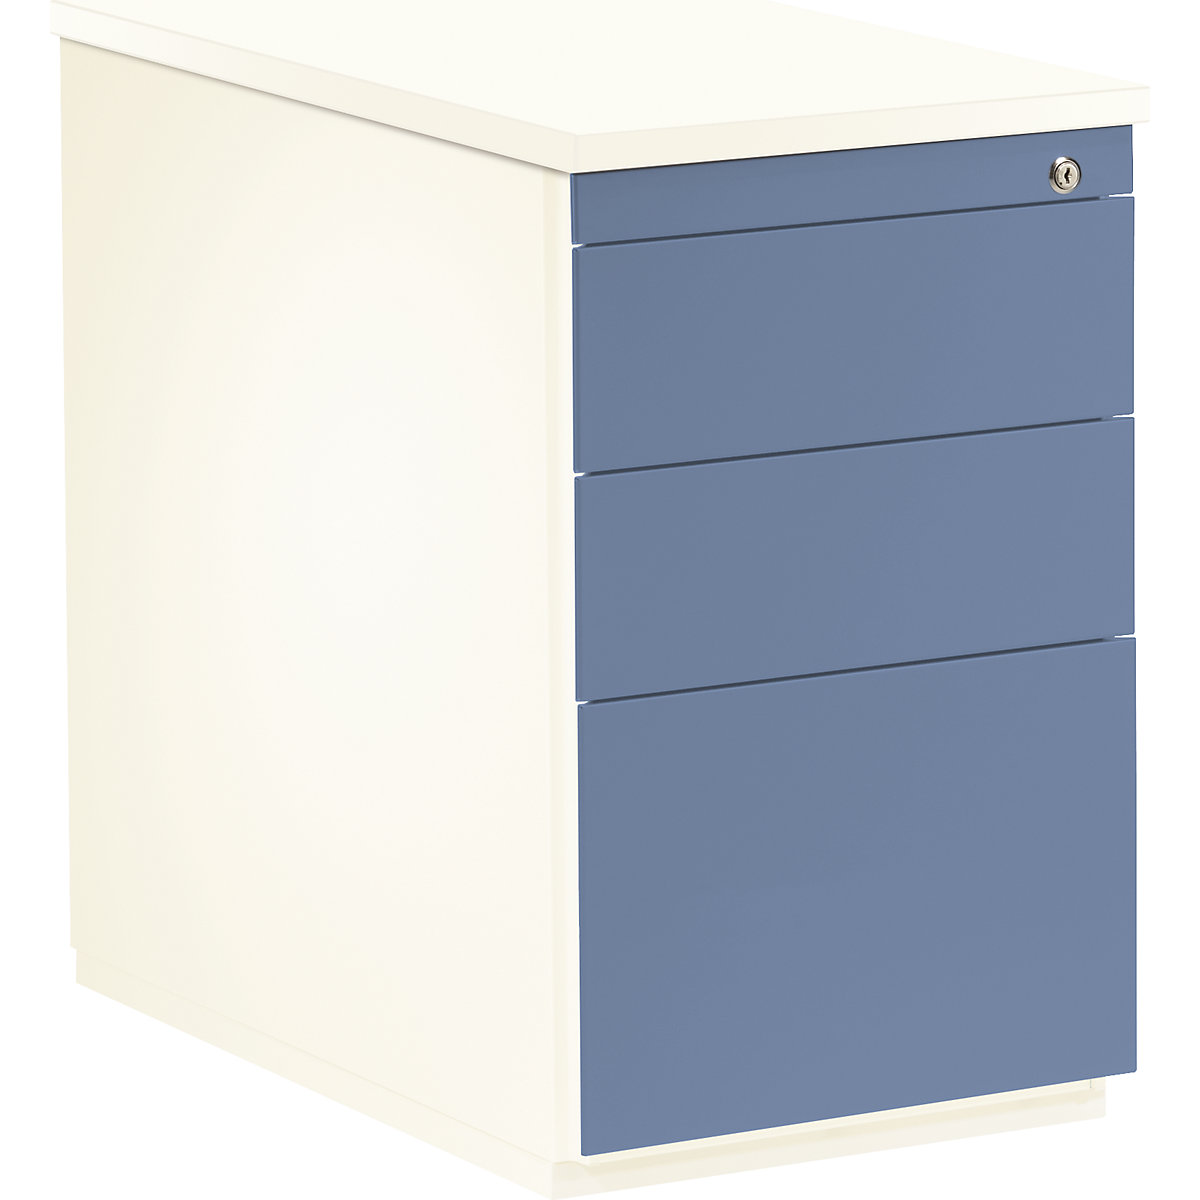 mauser – Casetieră cu sertare, î. x ad. 720 x 800 mm, 2 sertare pentru materiale, 1 registratură suspendată, alb pur / albastru porumbel / alb pur